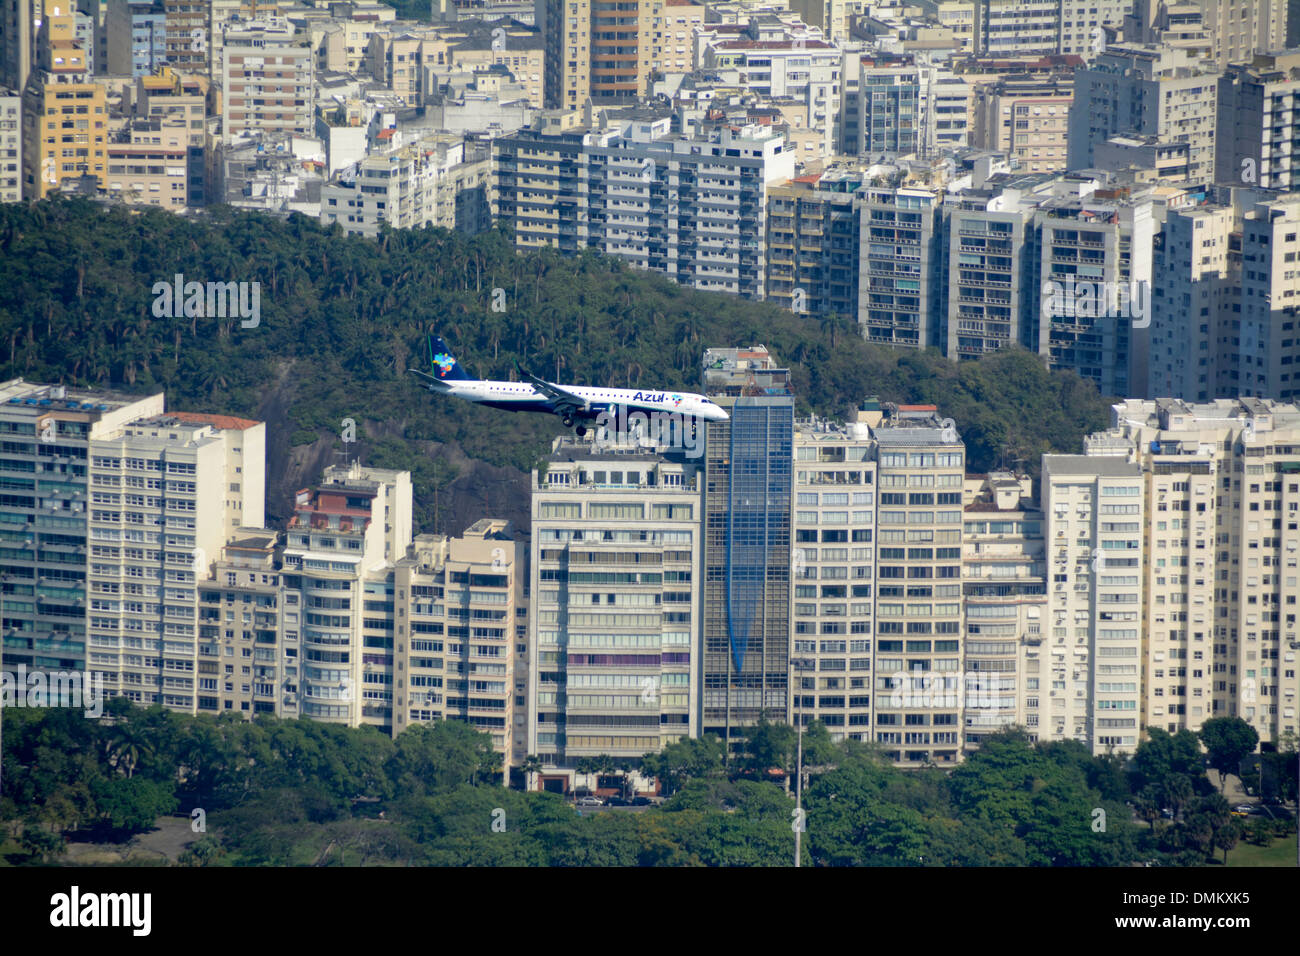 Une compagnie aérienne BRÉSILIENNE AZUL ( Azul Linhas Aereas) fait une approche finale sur un quartier riche de Botafogo vers l'aéroport Santos Demont voisin Banque D'Images